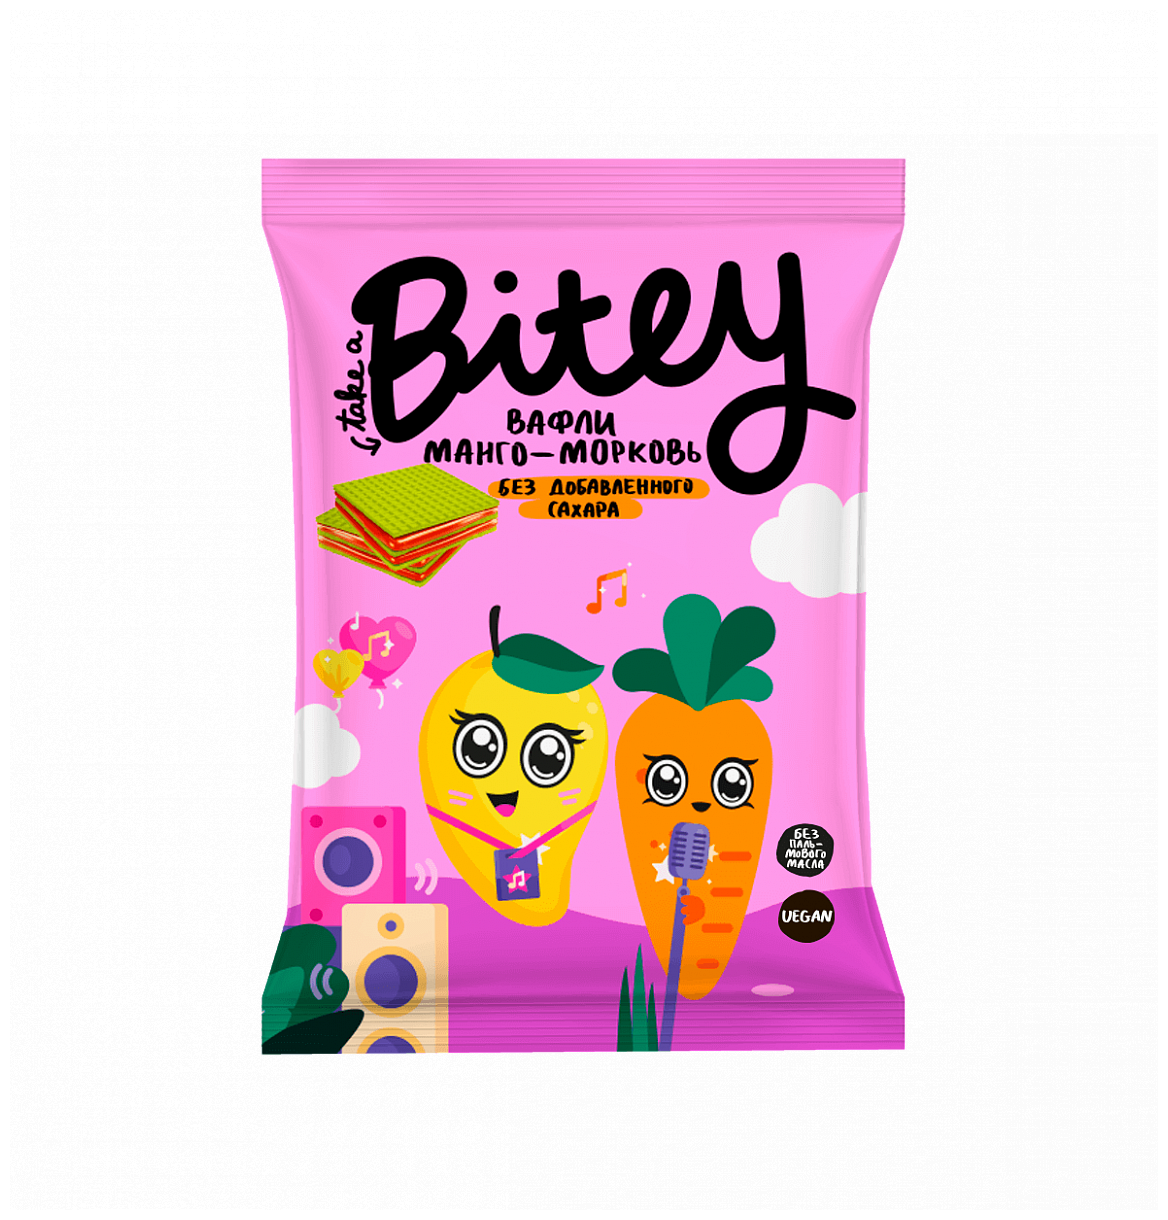 Вафли Bite "Манго-Морковь" 35 грамм